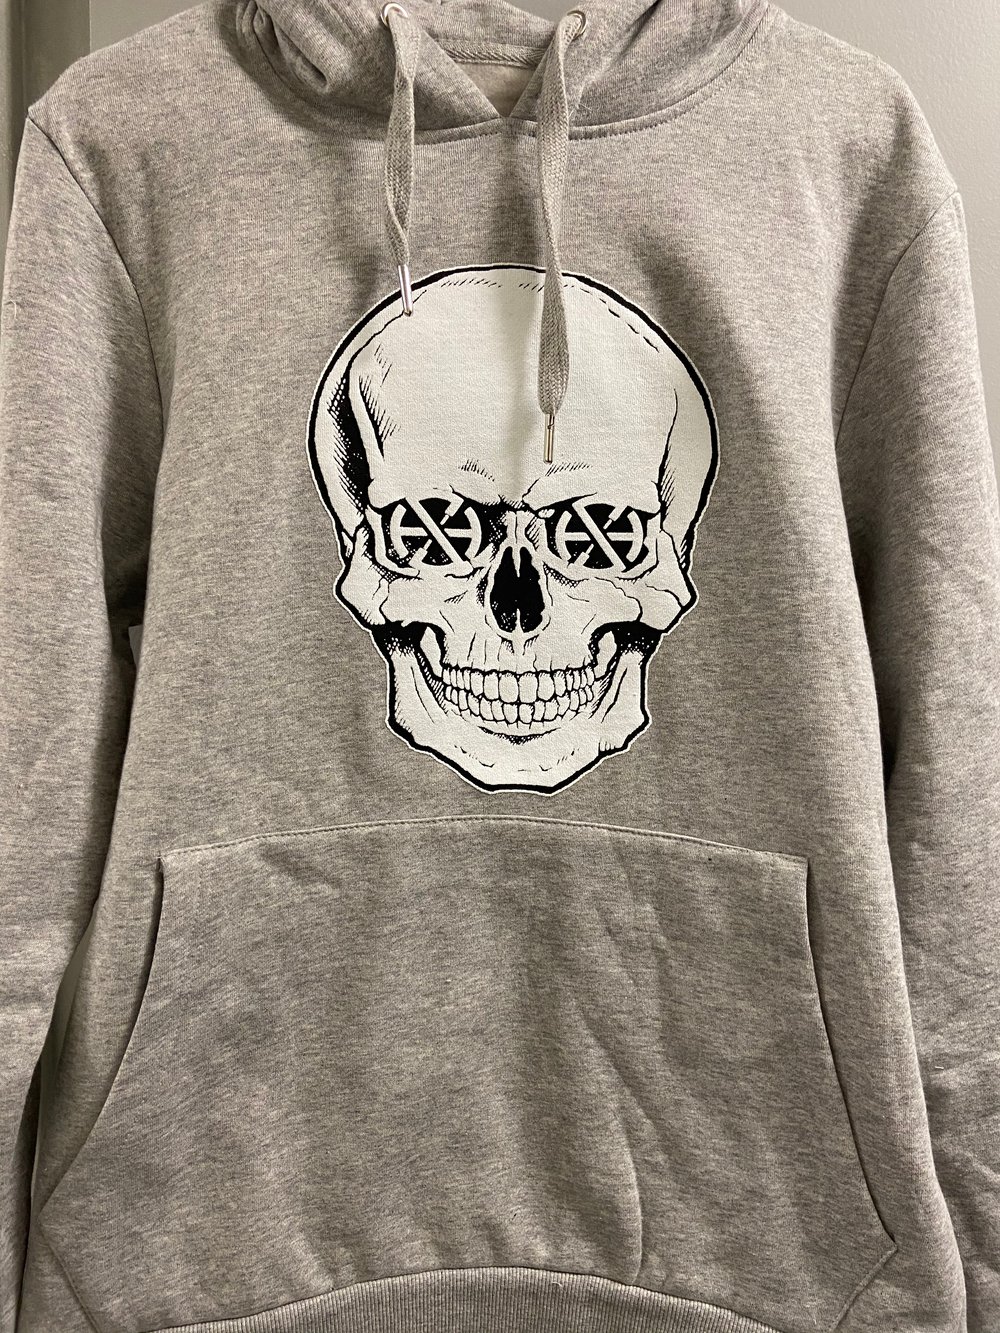 Sneakerheads are dead grey hoodies